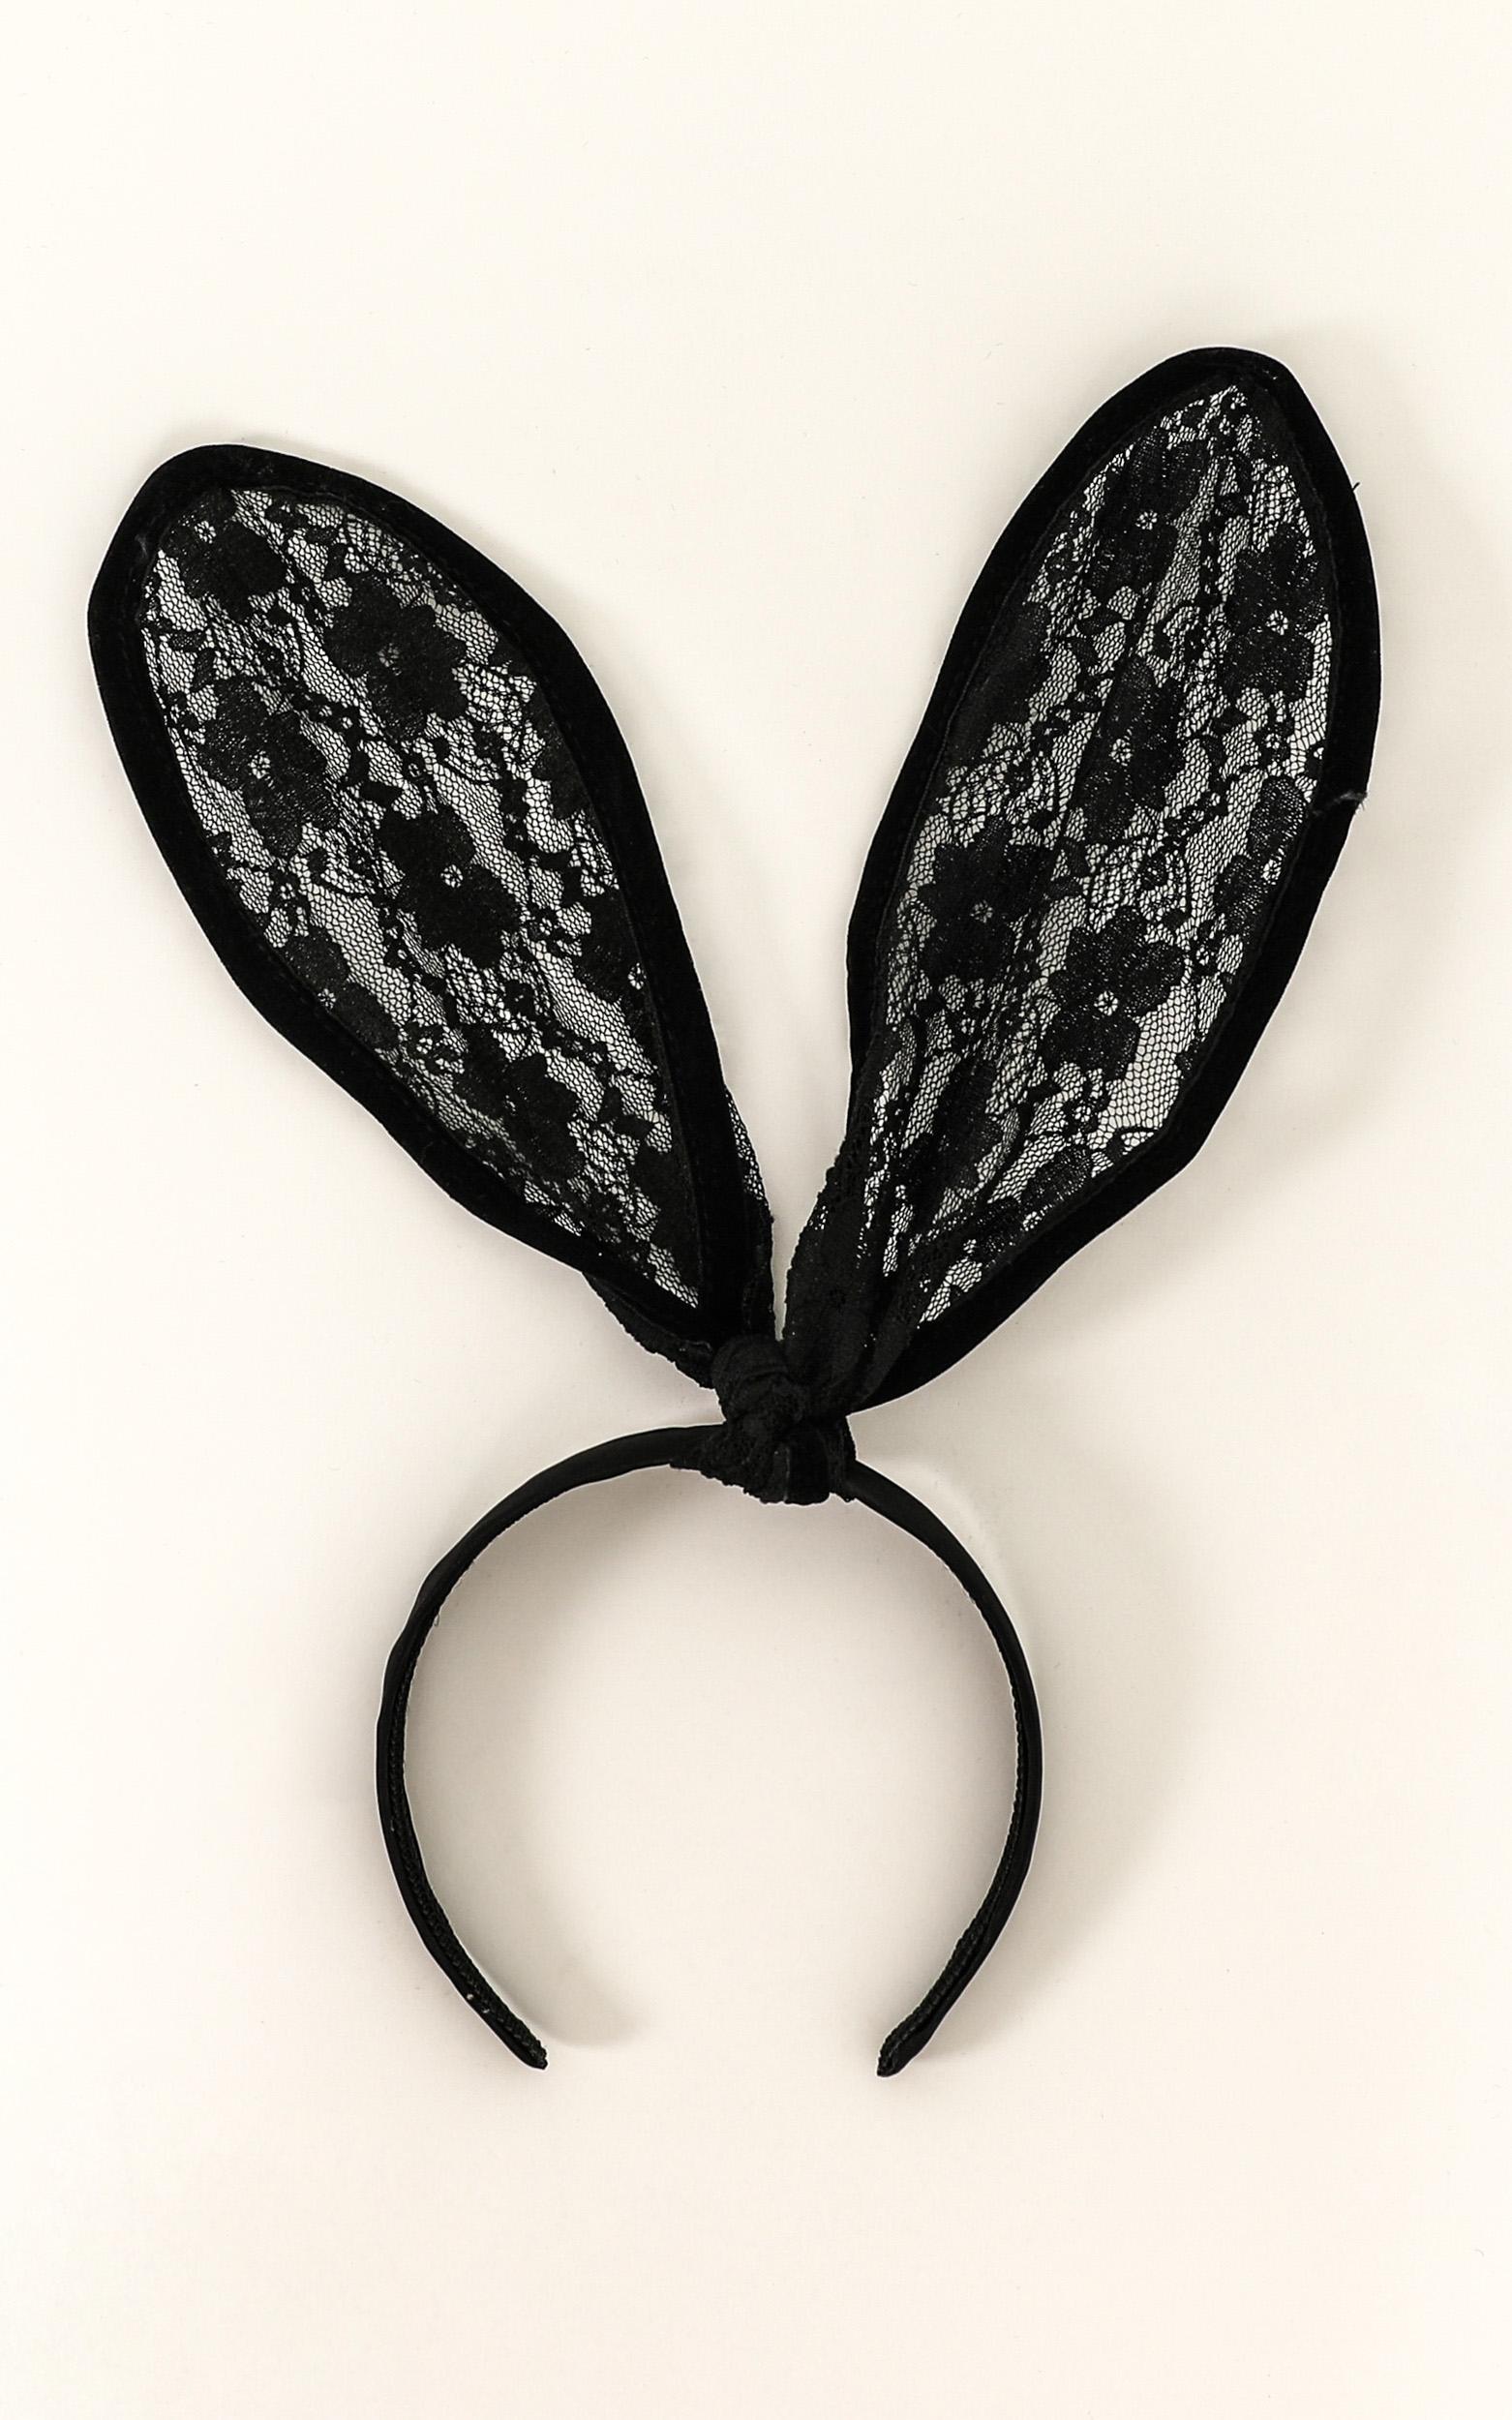 Bunny Ears In Black Lace Showpo Nz 0241